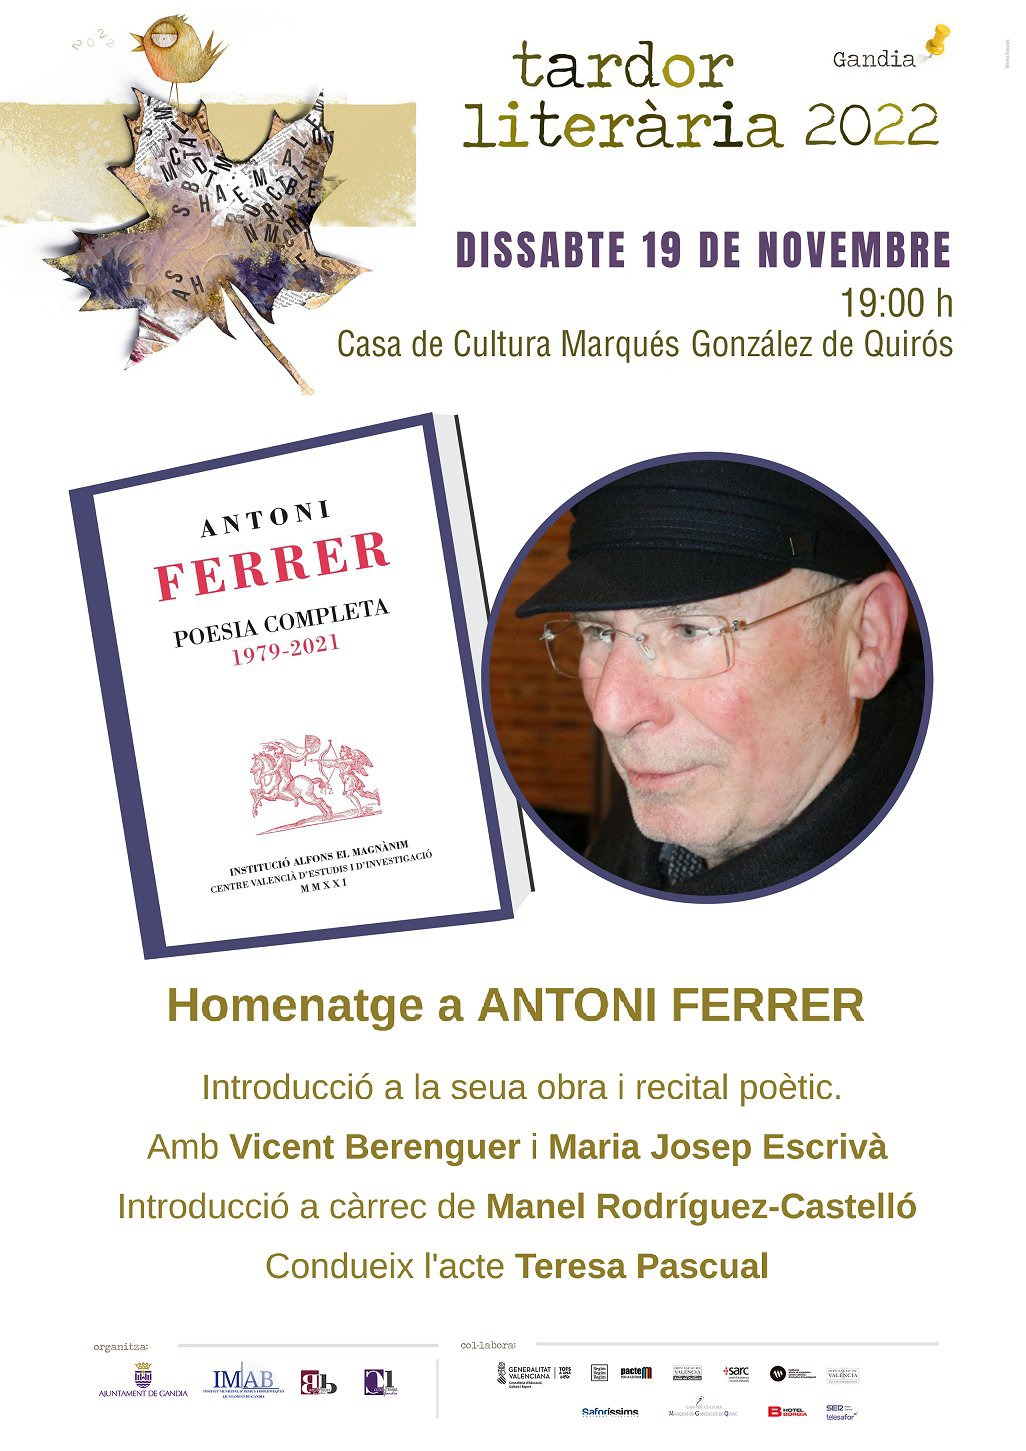 Homenaje a Antoni Ferrer